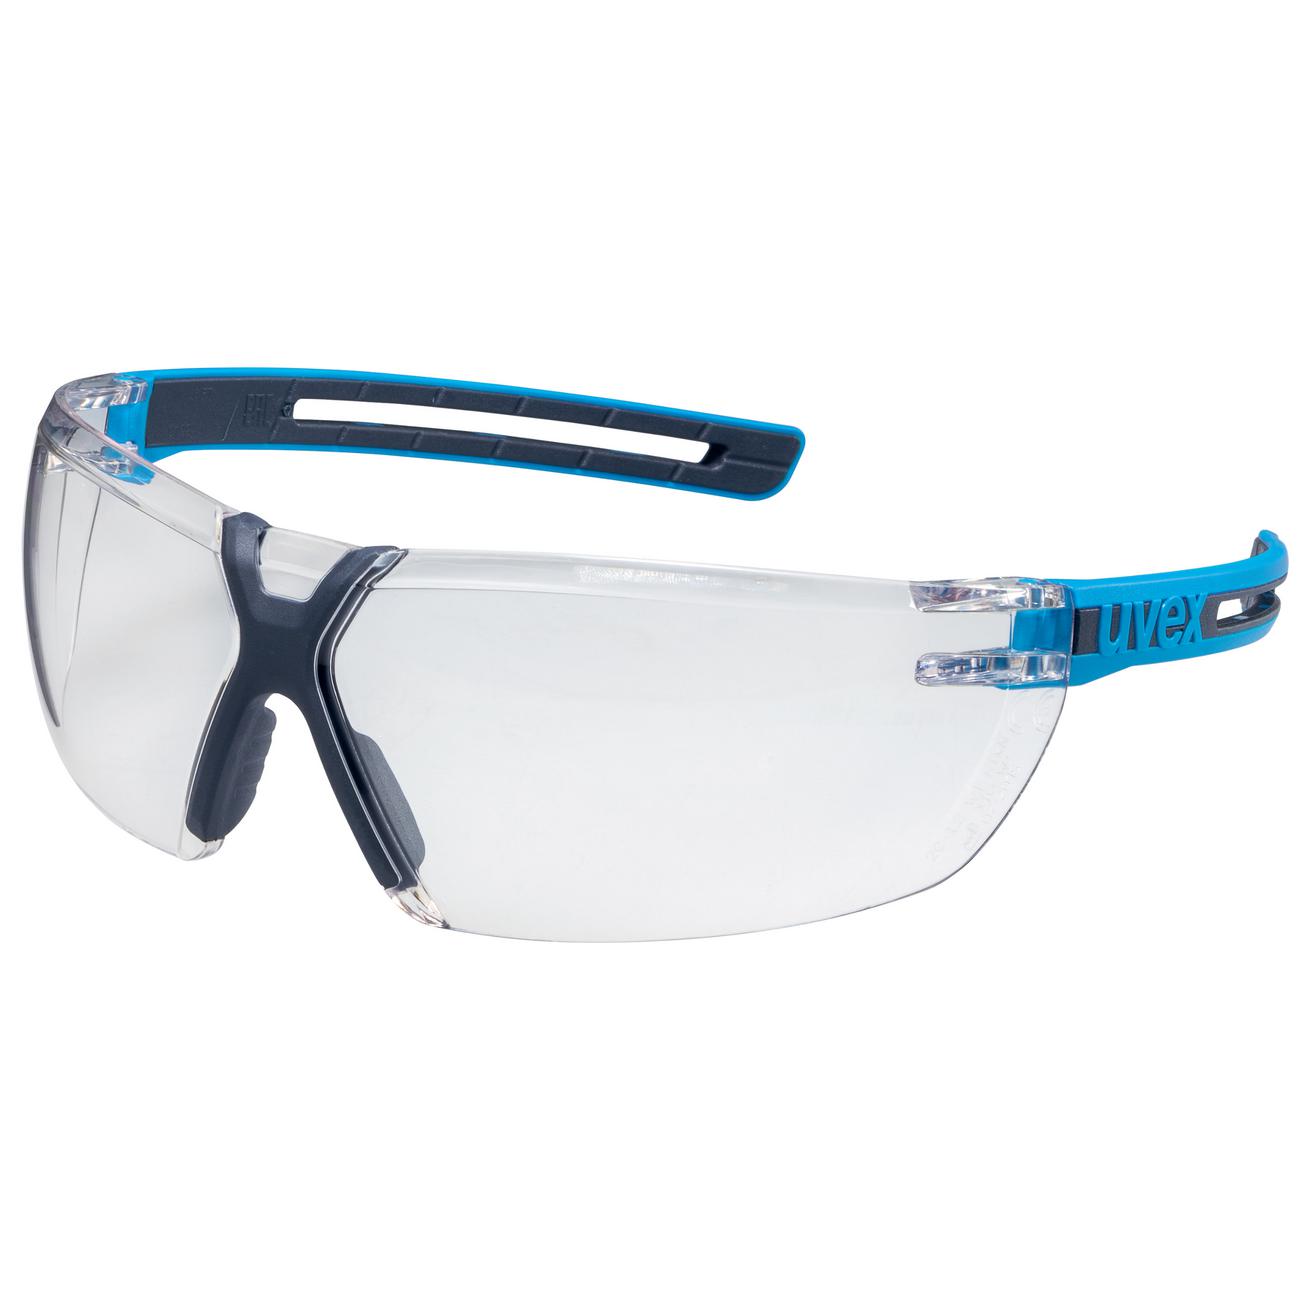 Brýle uvex x-fit pro Kód produktu: 9199247, Provedení zorníku: PC čirý/2C-1,2; SV excellence, rám. modrý, antracit, bez pojezdu